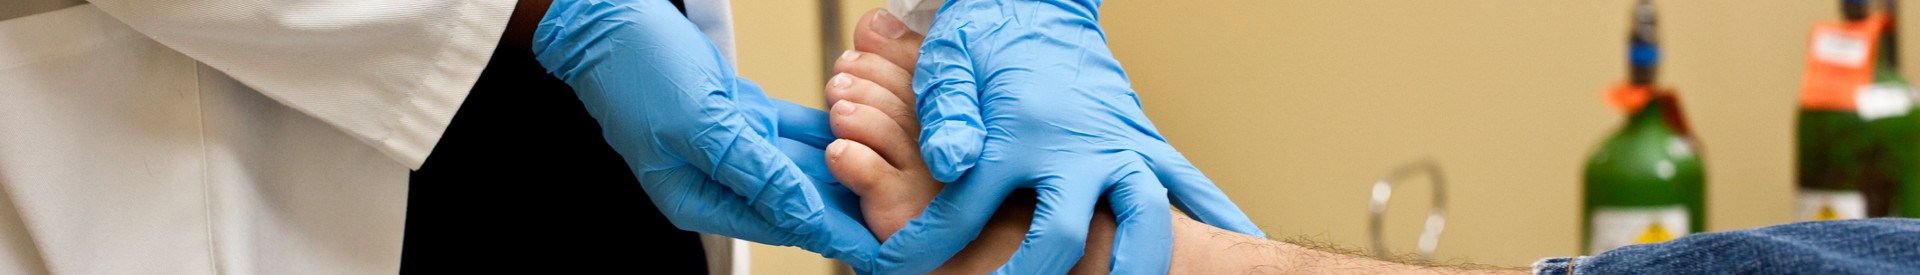 Doctor Examining Patient's Foot